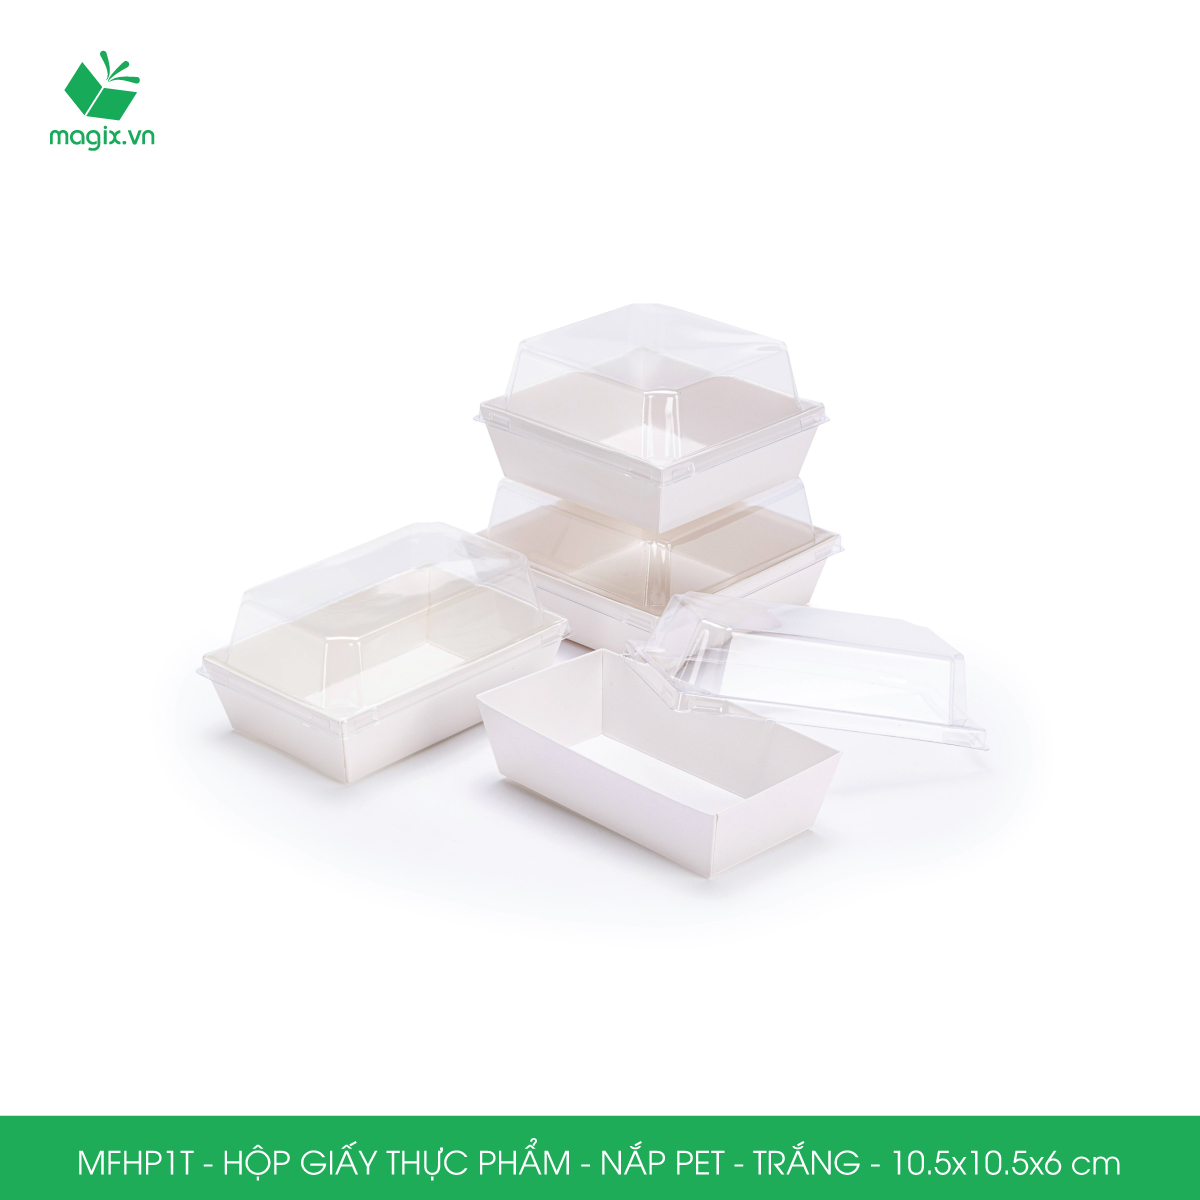 MFHP1T - 10.5x10.5x6 cm - 50 hộp giấy thực phẩm màu trắng nắp Pet, hộp giấy vuông đựng thức ăn, hộp bánh nắp trong